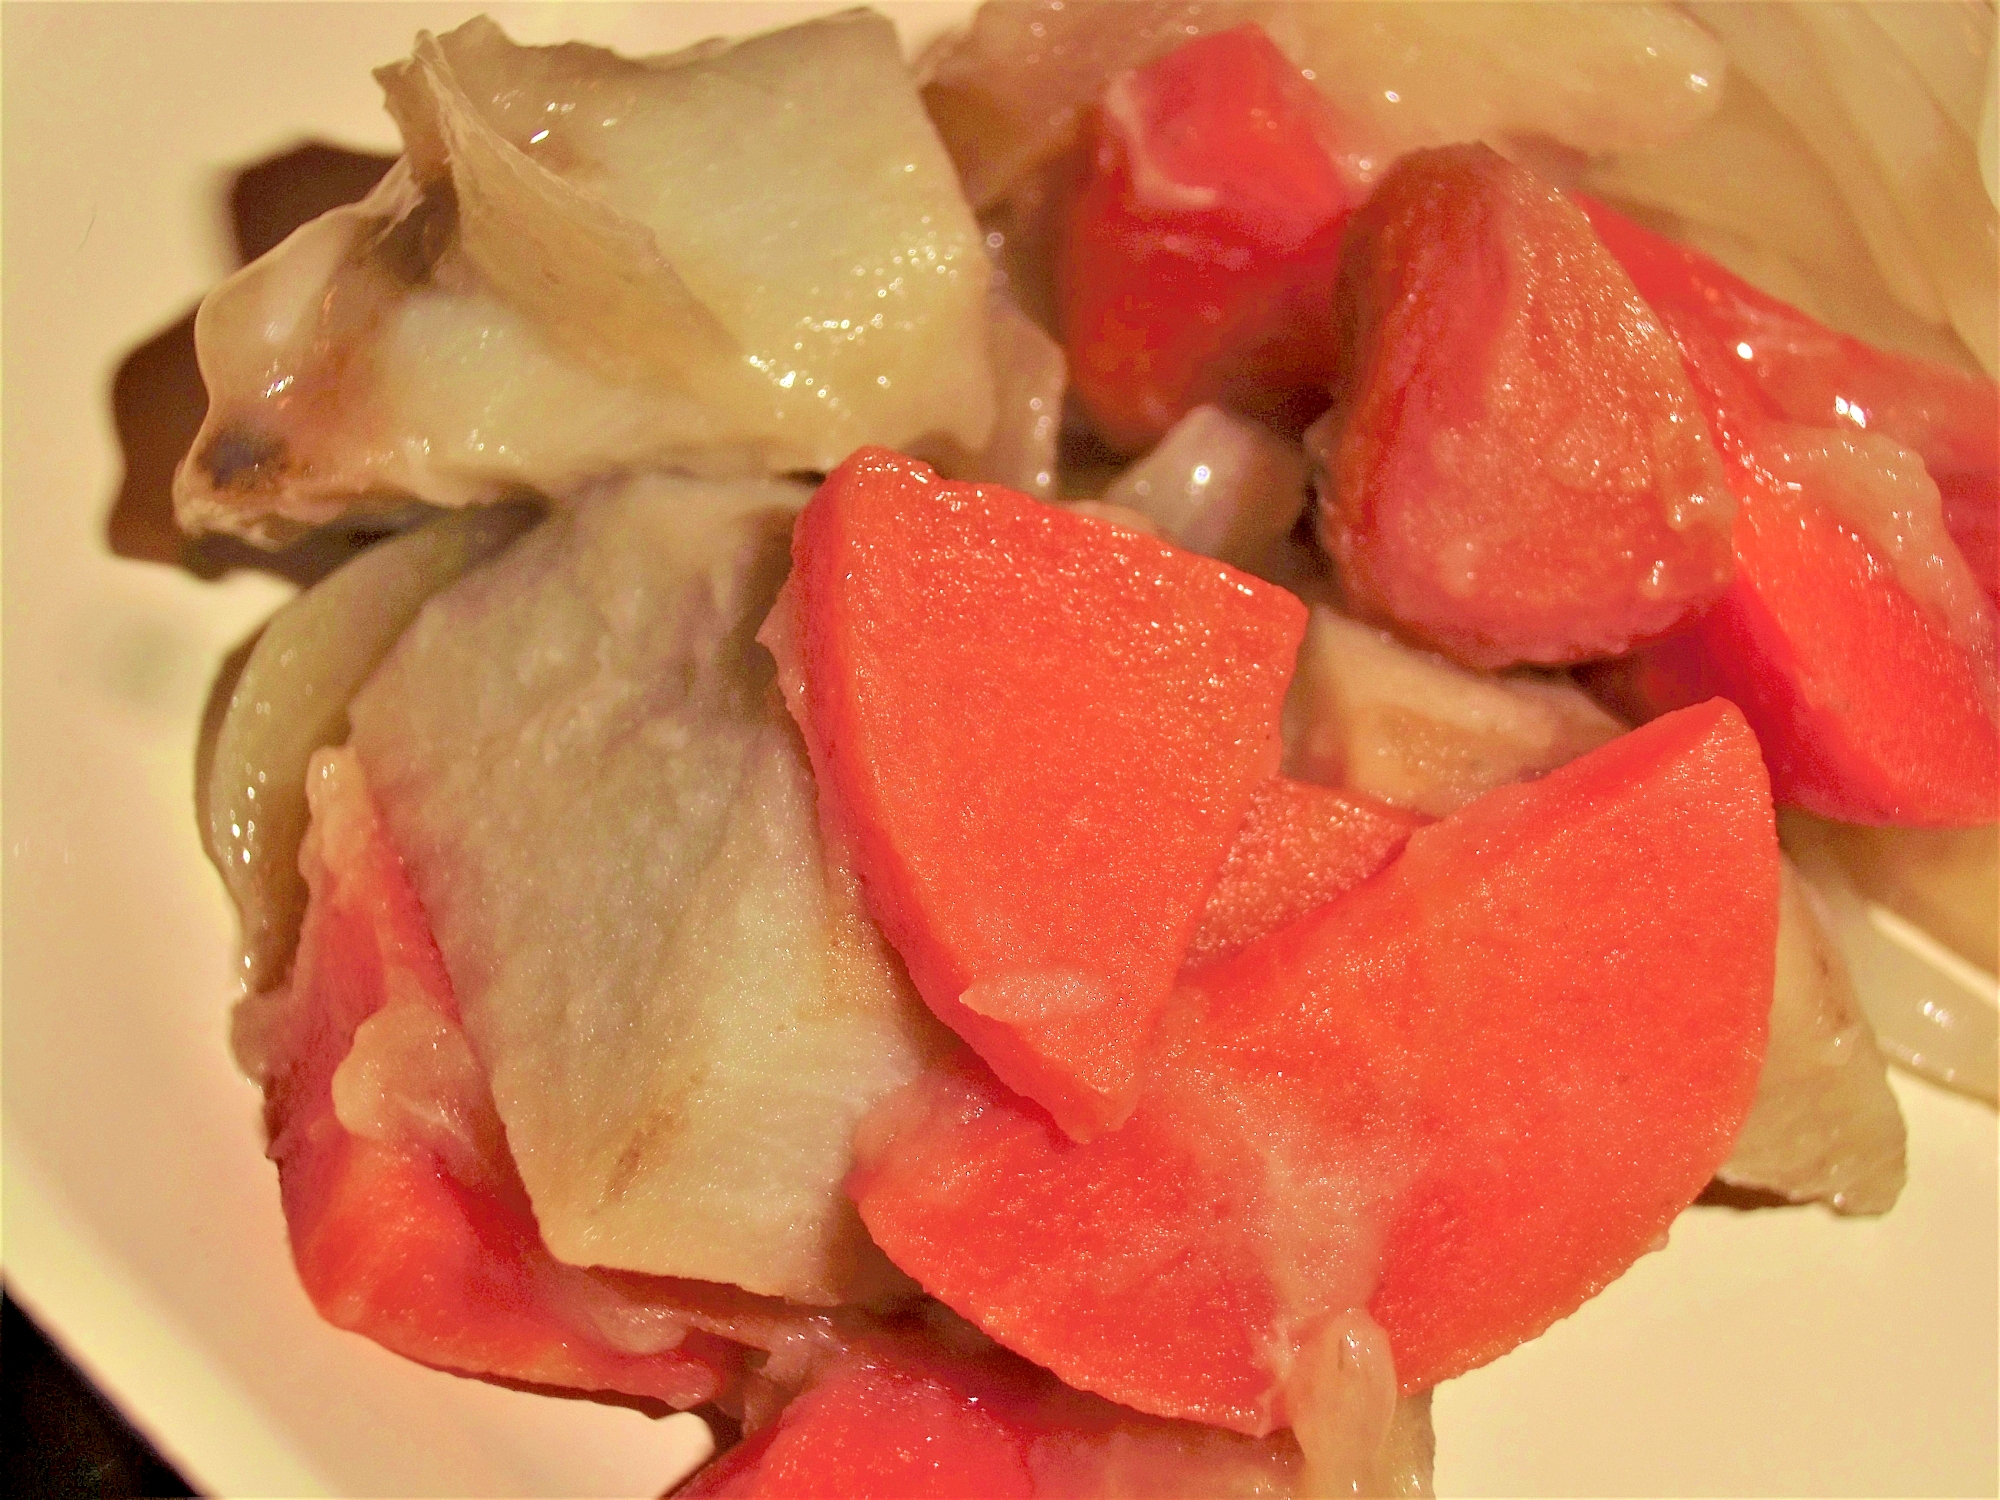 バランス栄養食！玉ねぎにんじん里芋のうま煮